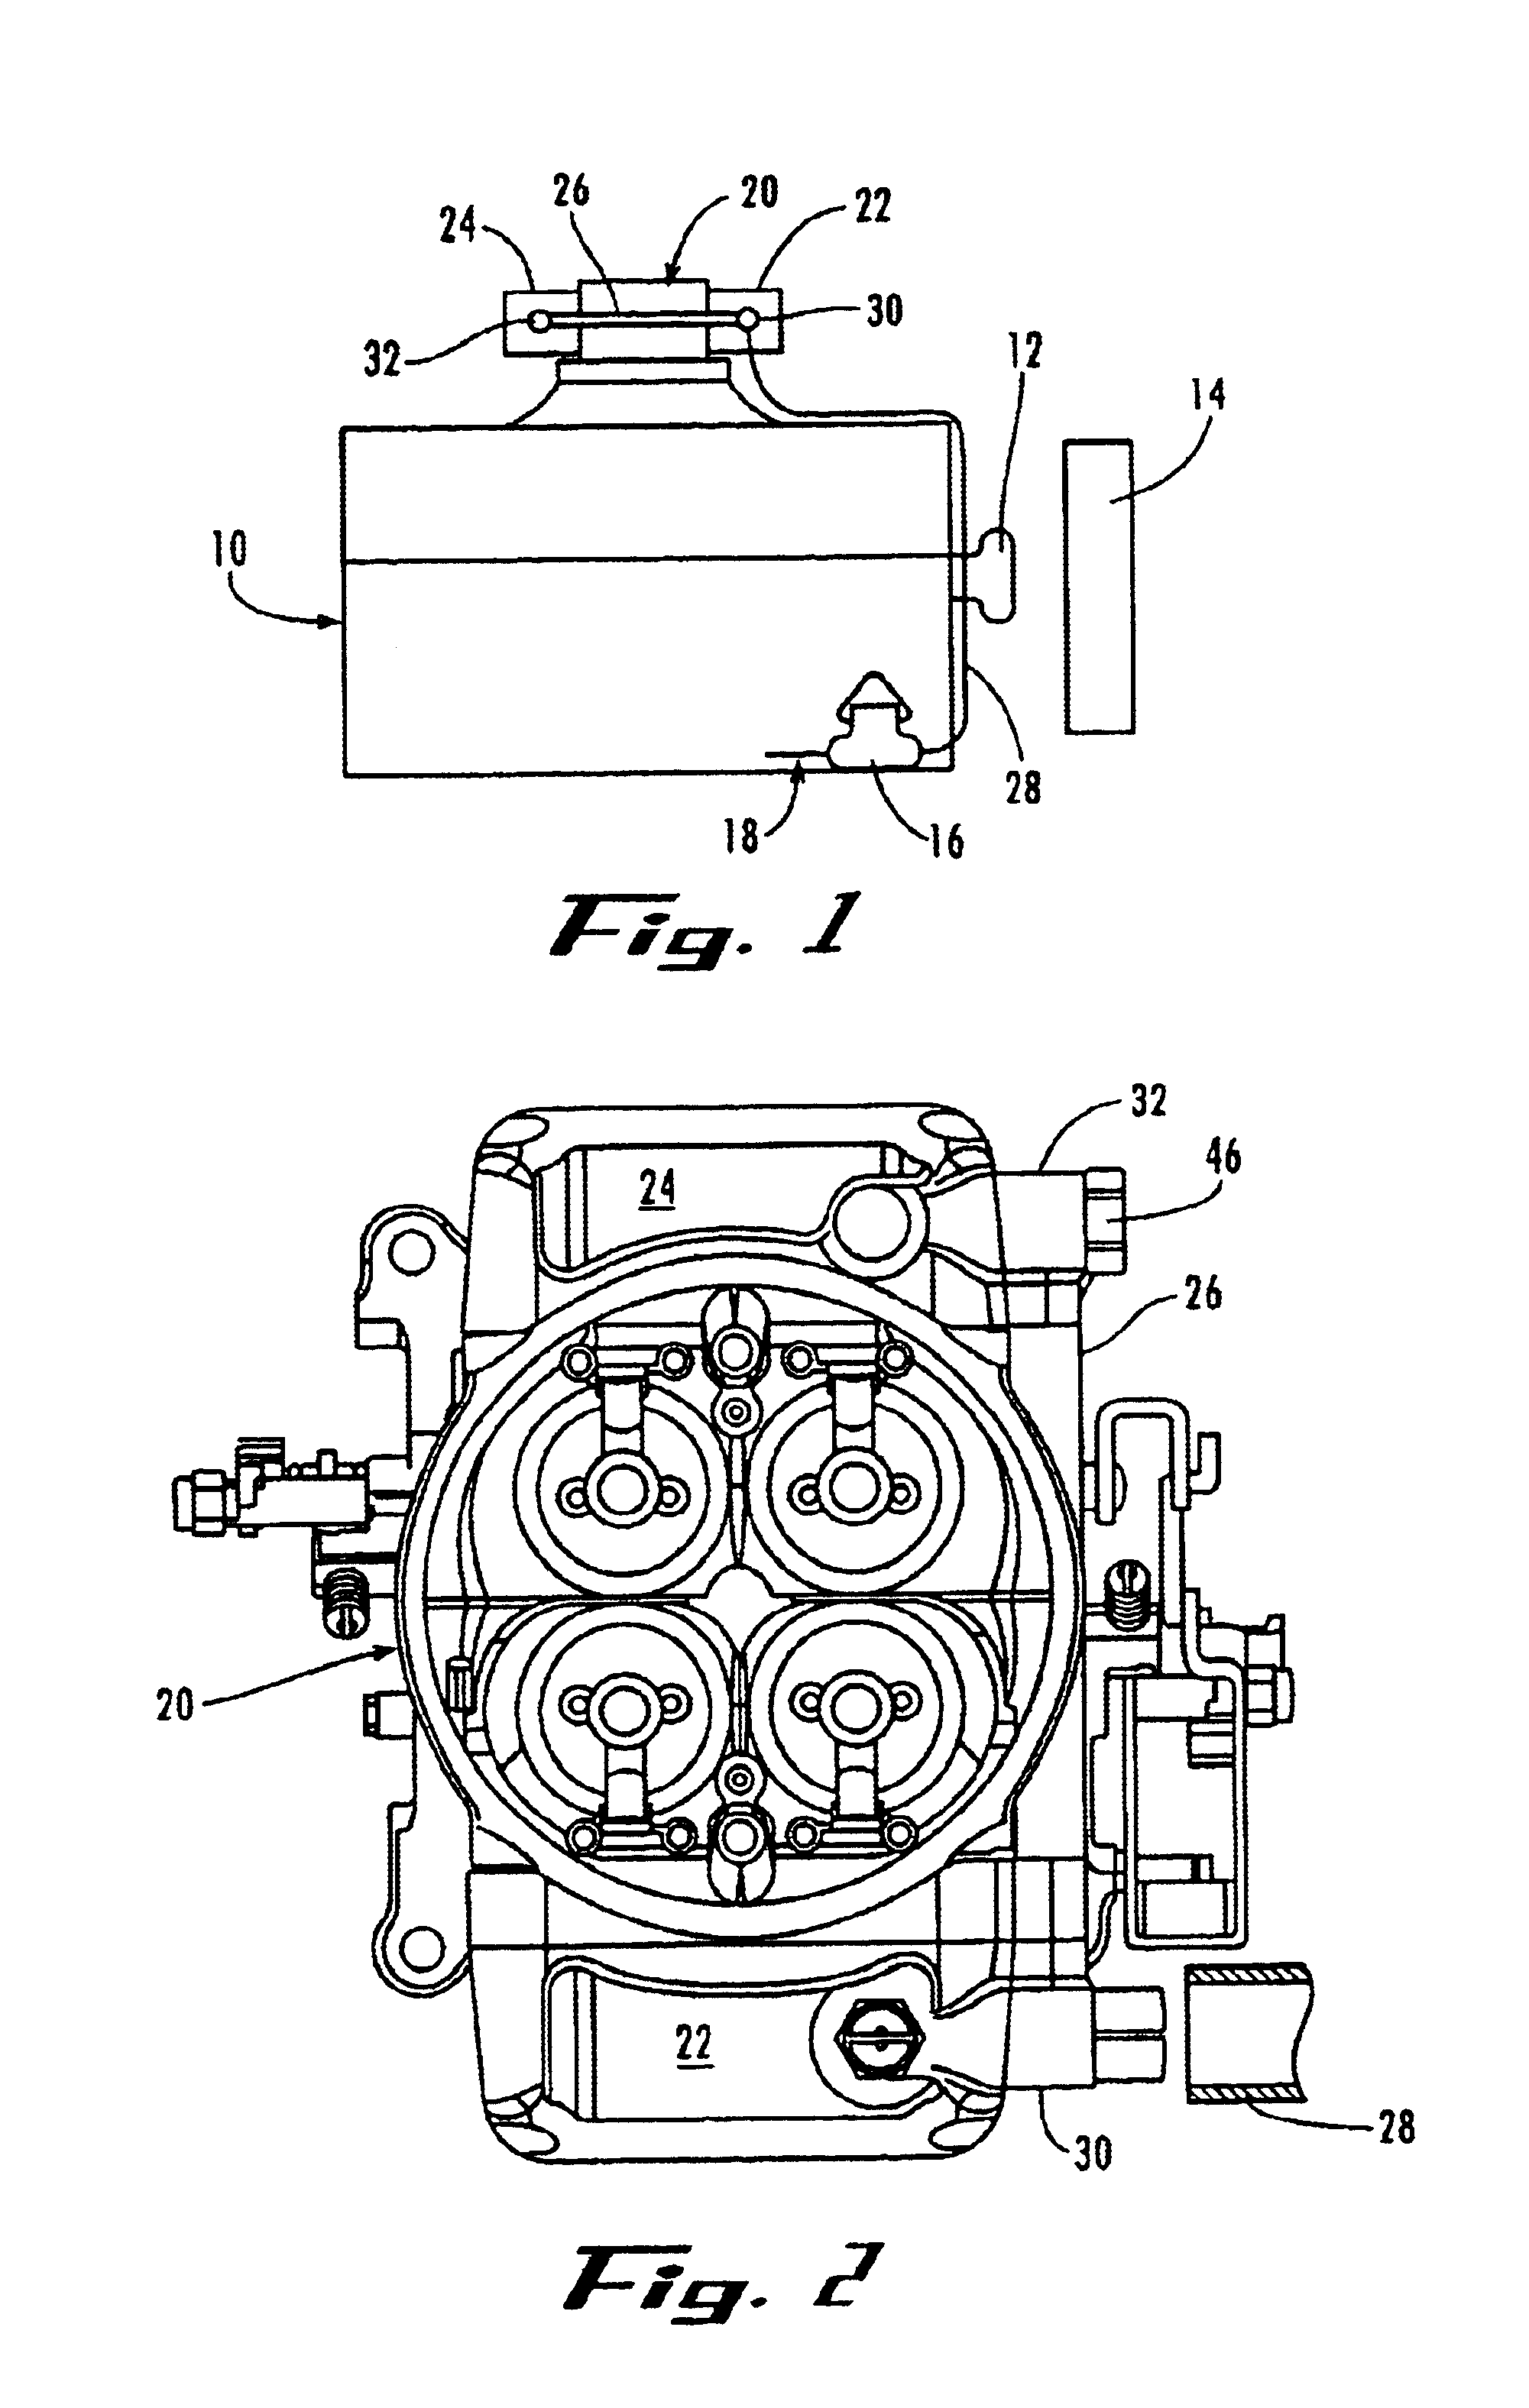 Transfer tube for carburetor fuel bowls